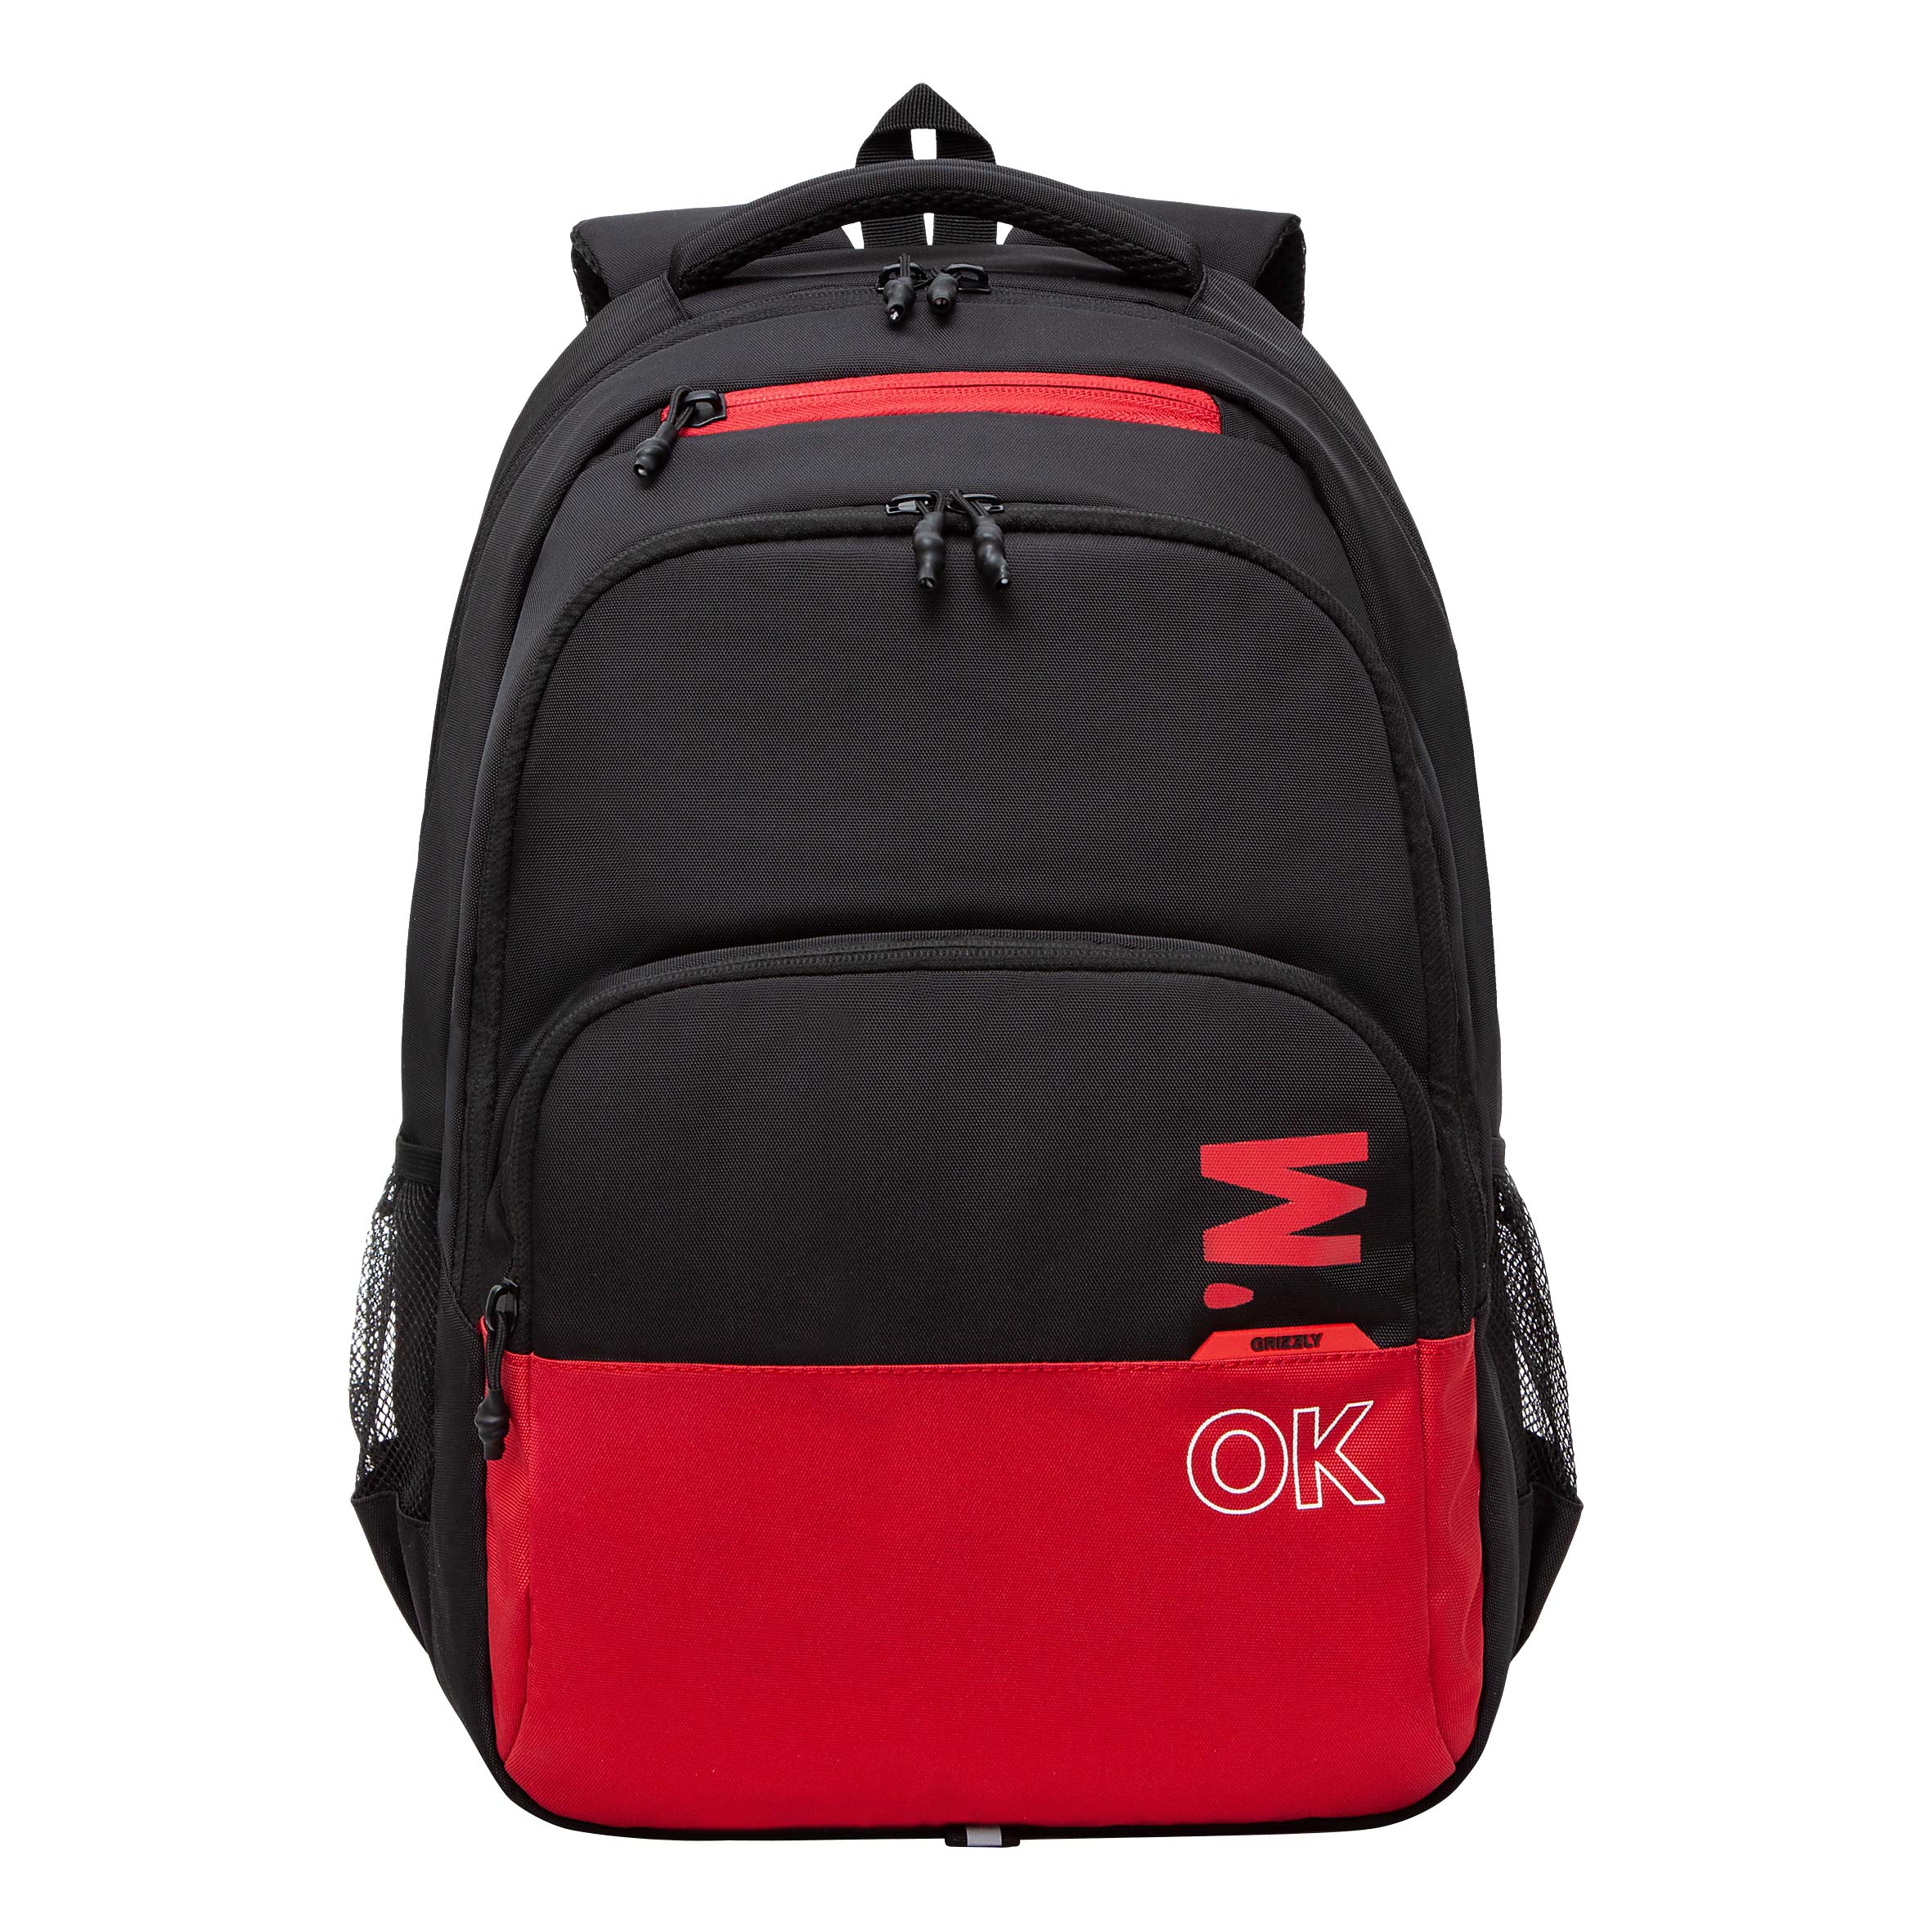 Рюкзак для мальчиков Grizzly RU-430-7 черный, красный